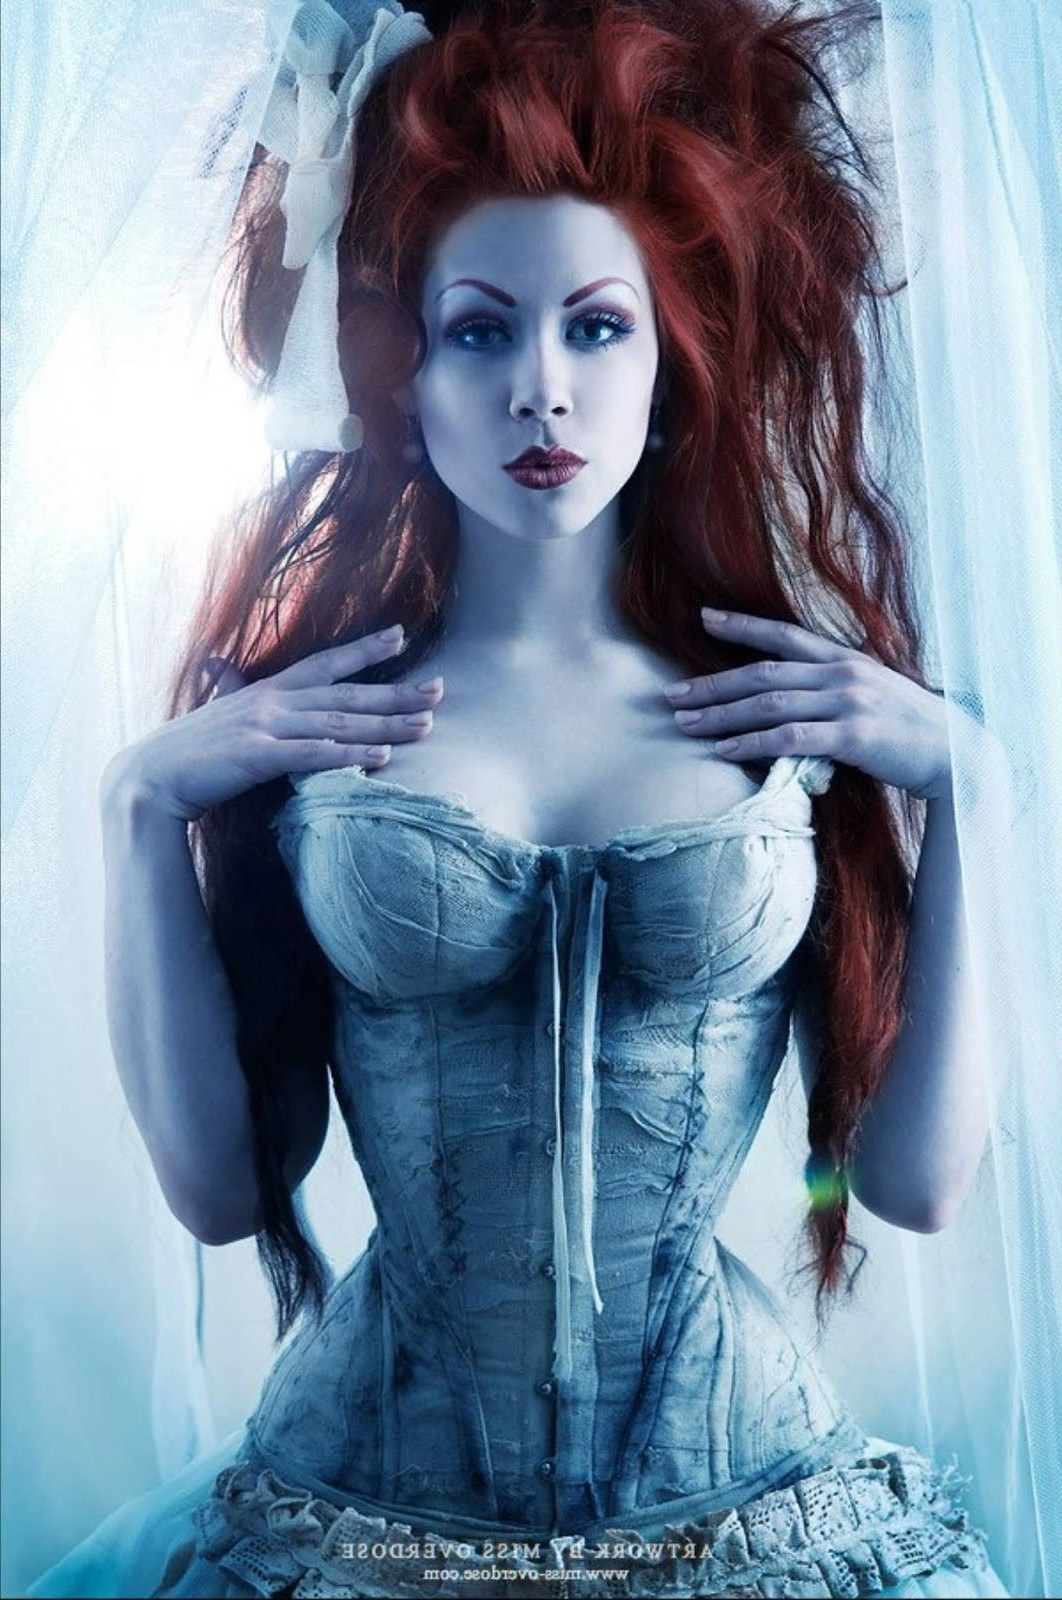 https://pichunter.club/uploads/posts/2022-12/1671232453_27-pichunter-club-p-erotica-of-a-beauty-in-a-corset-33.jpg